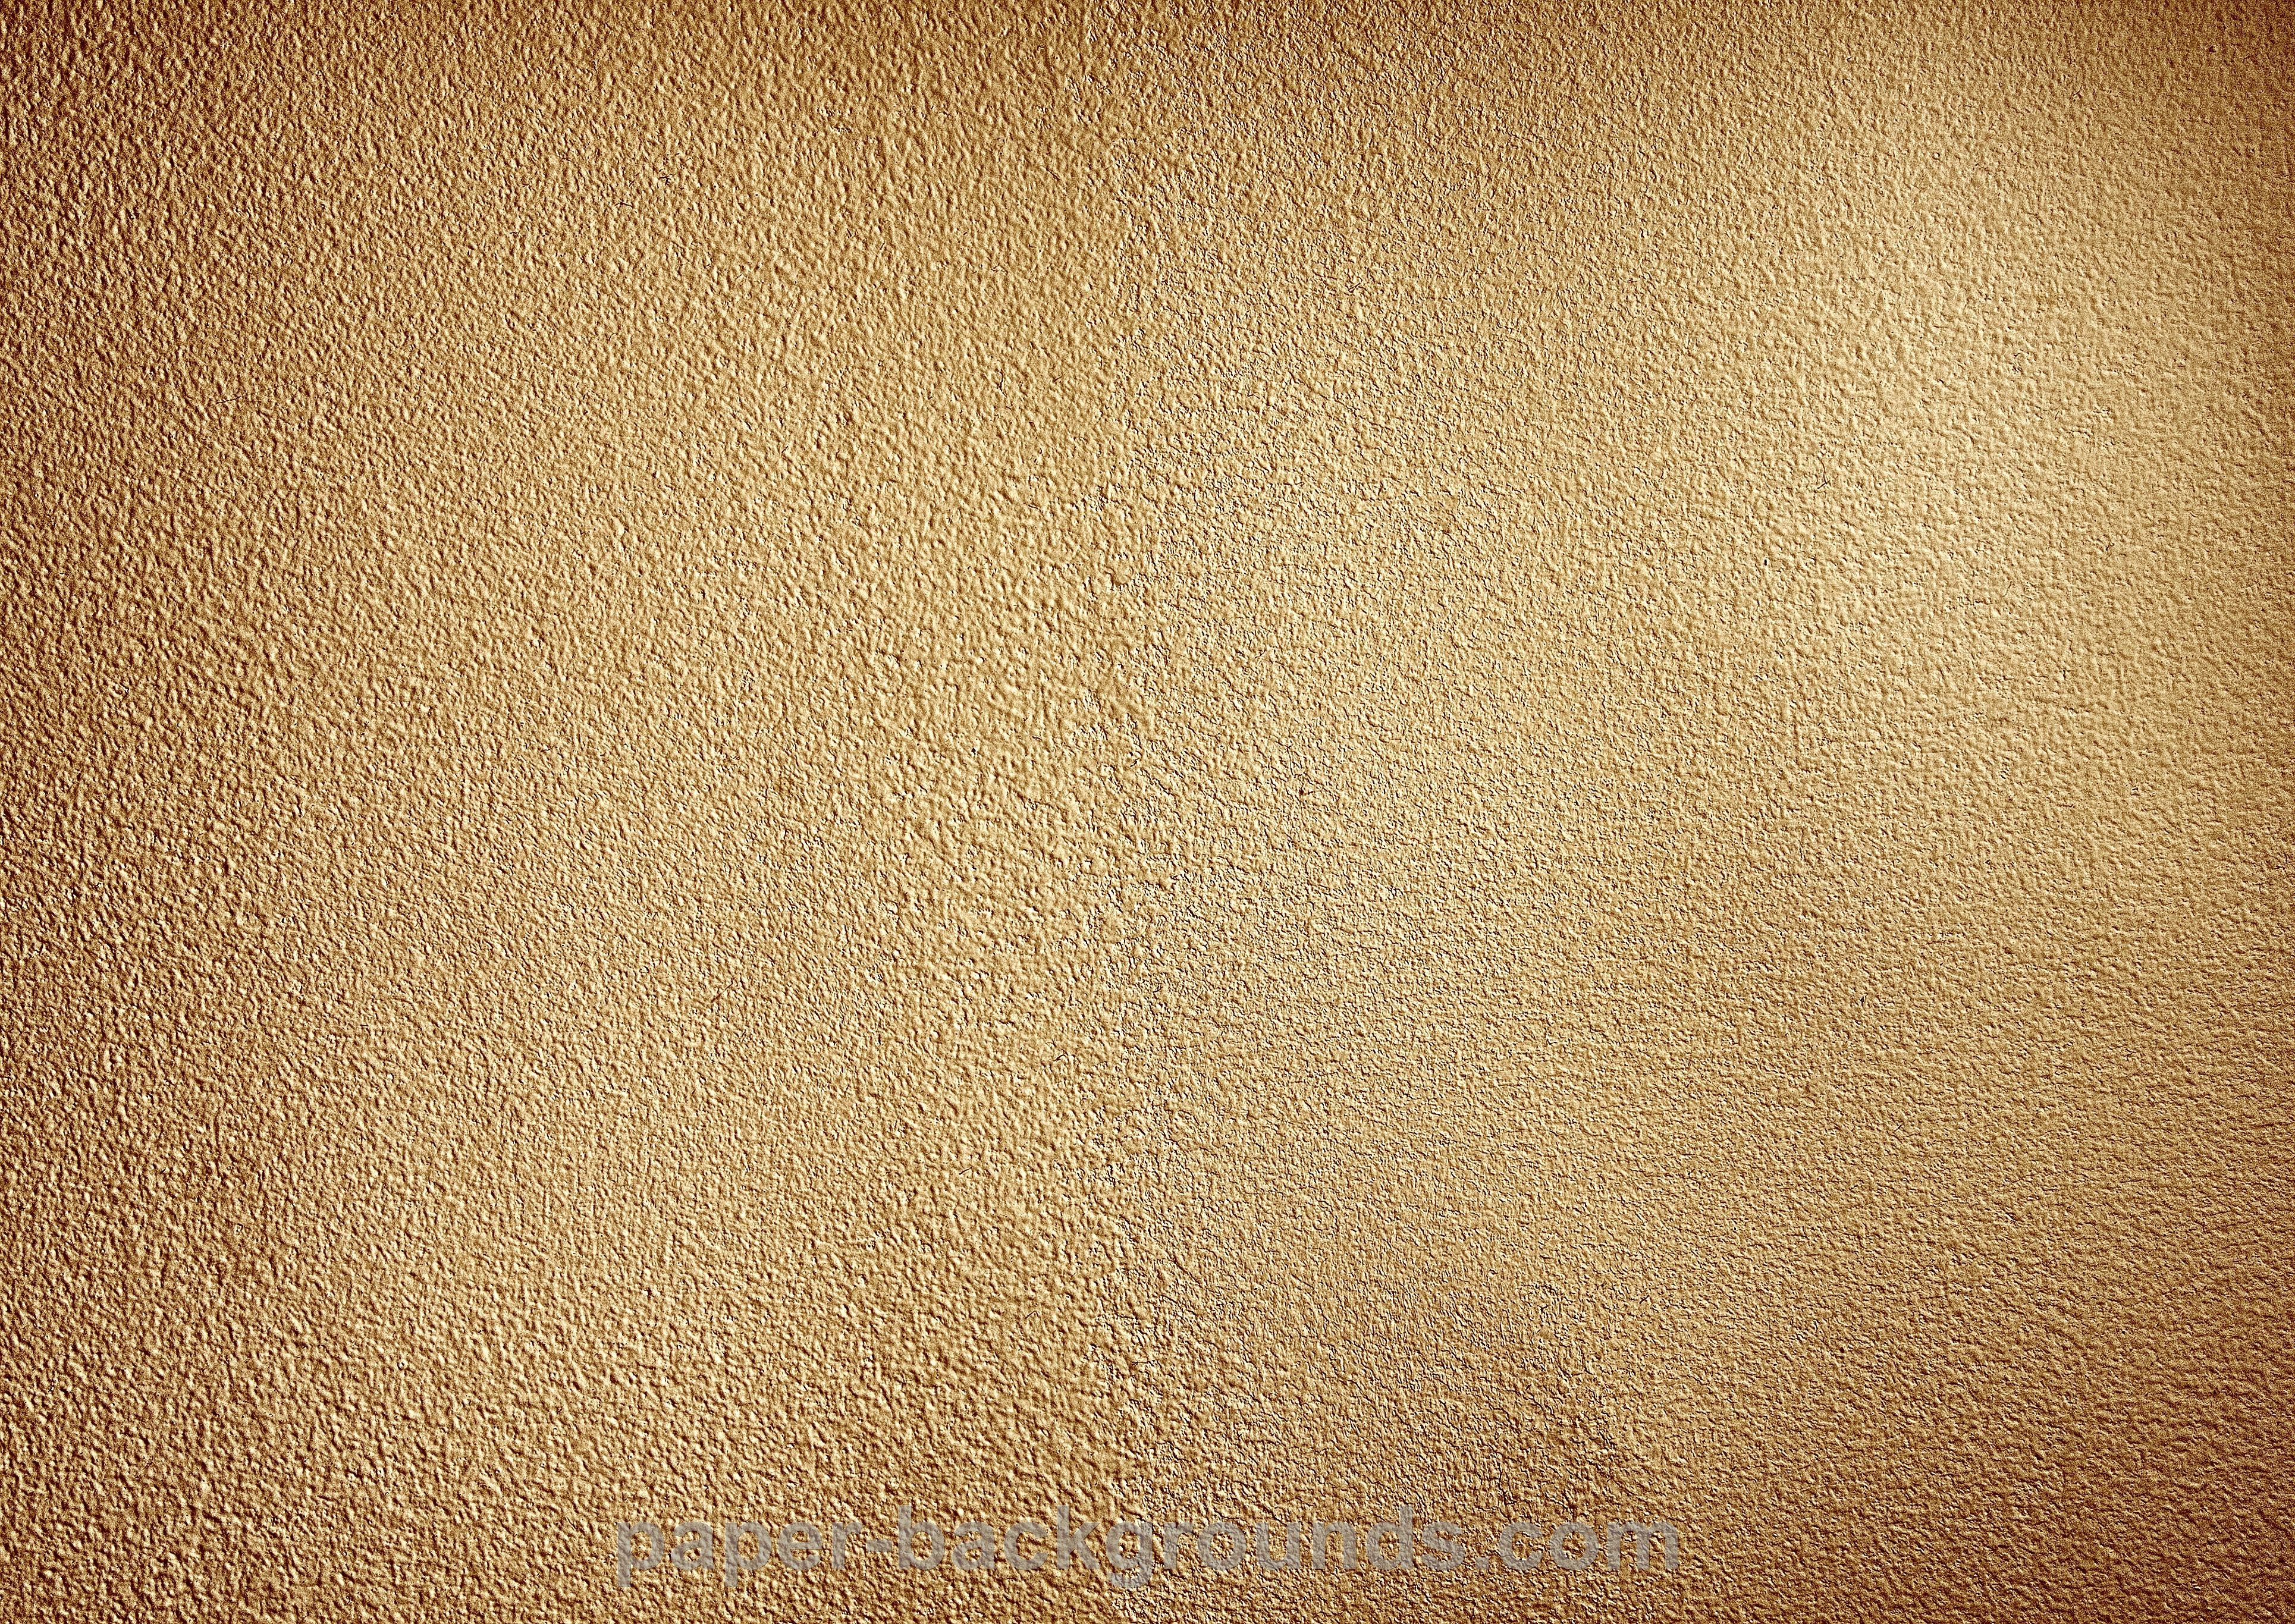 Golden Parchment Paper Texture Picture Free Photograph Photos